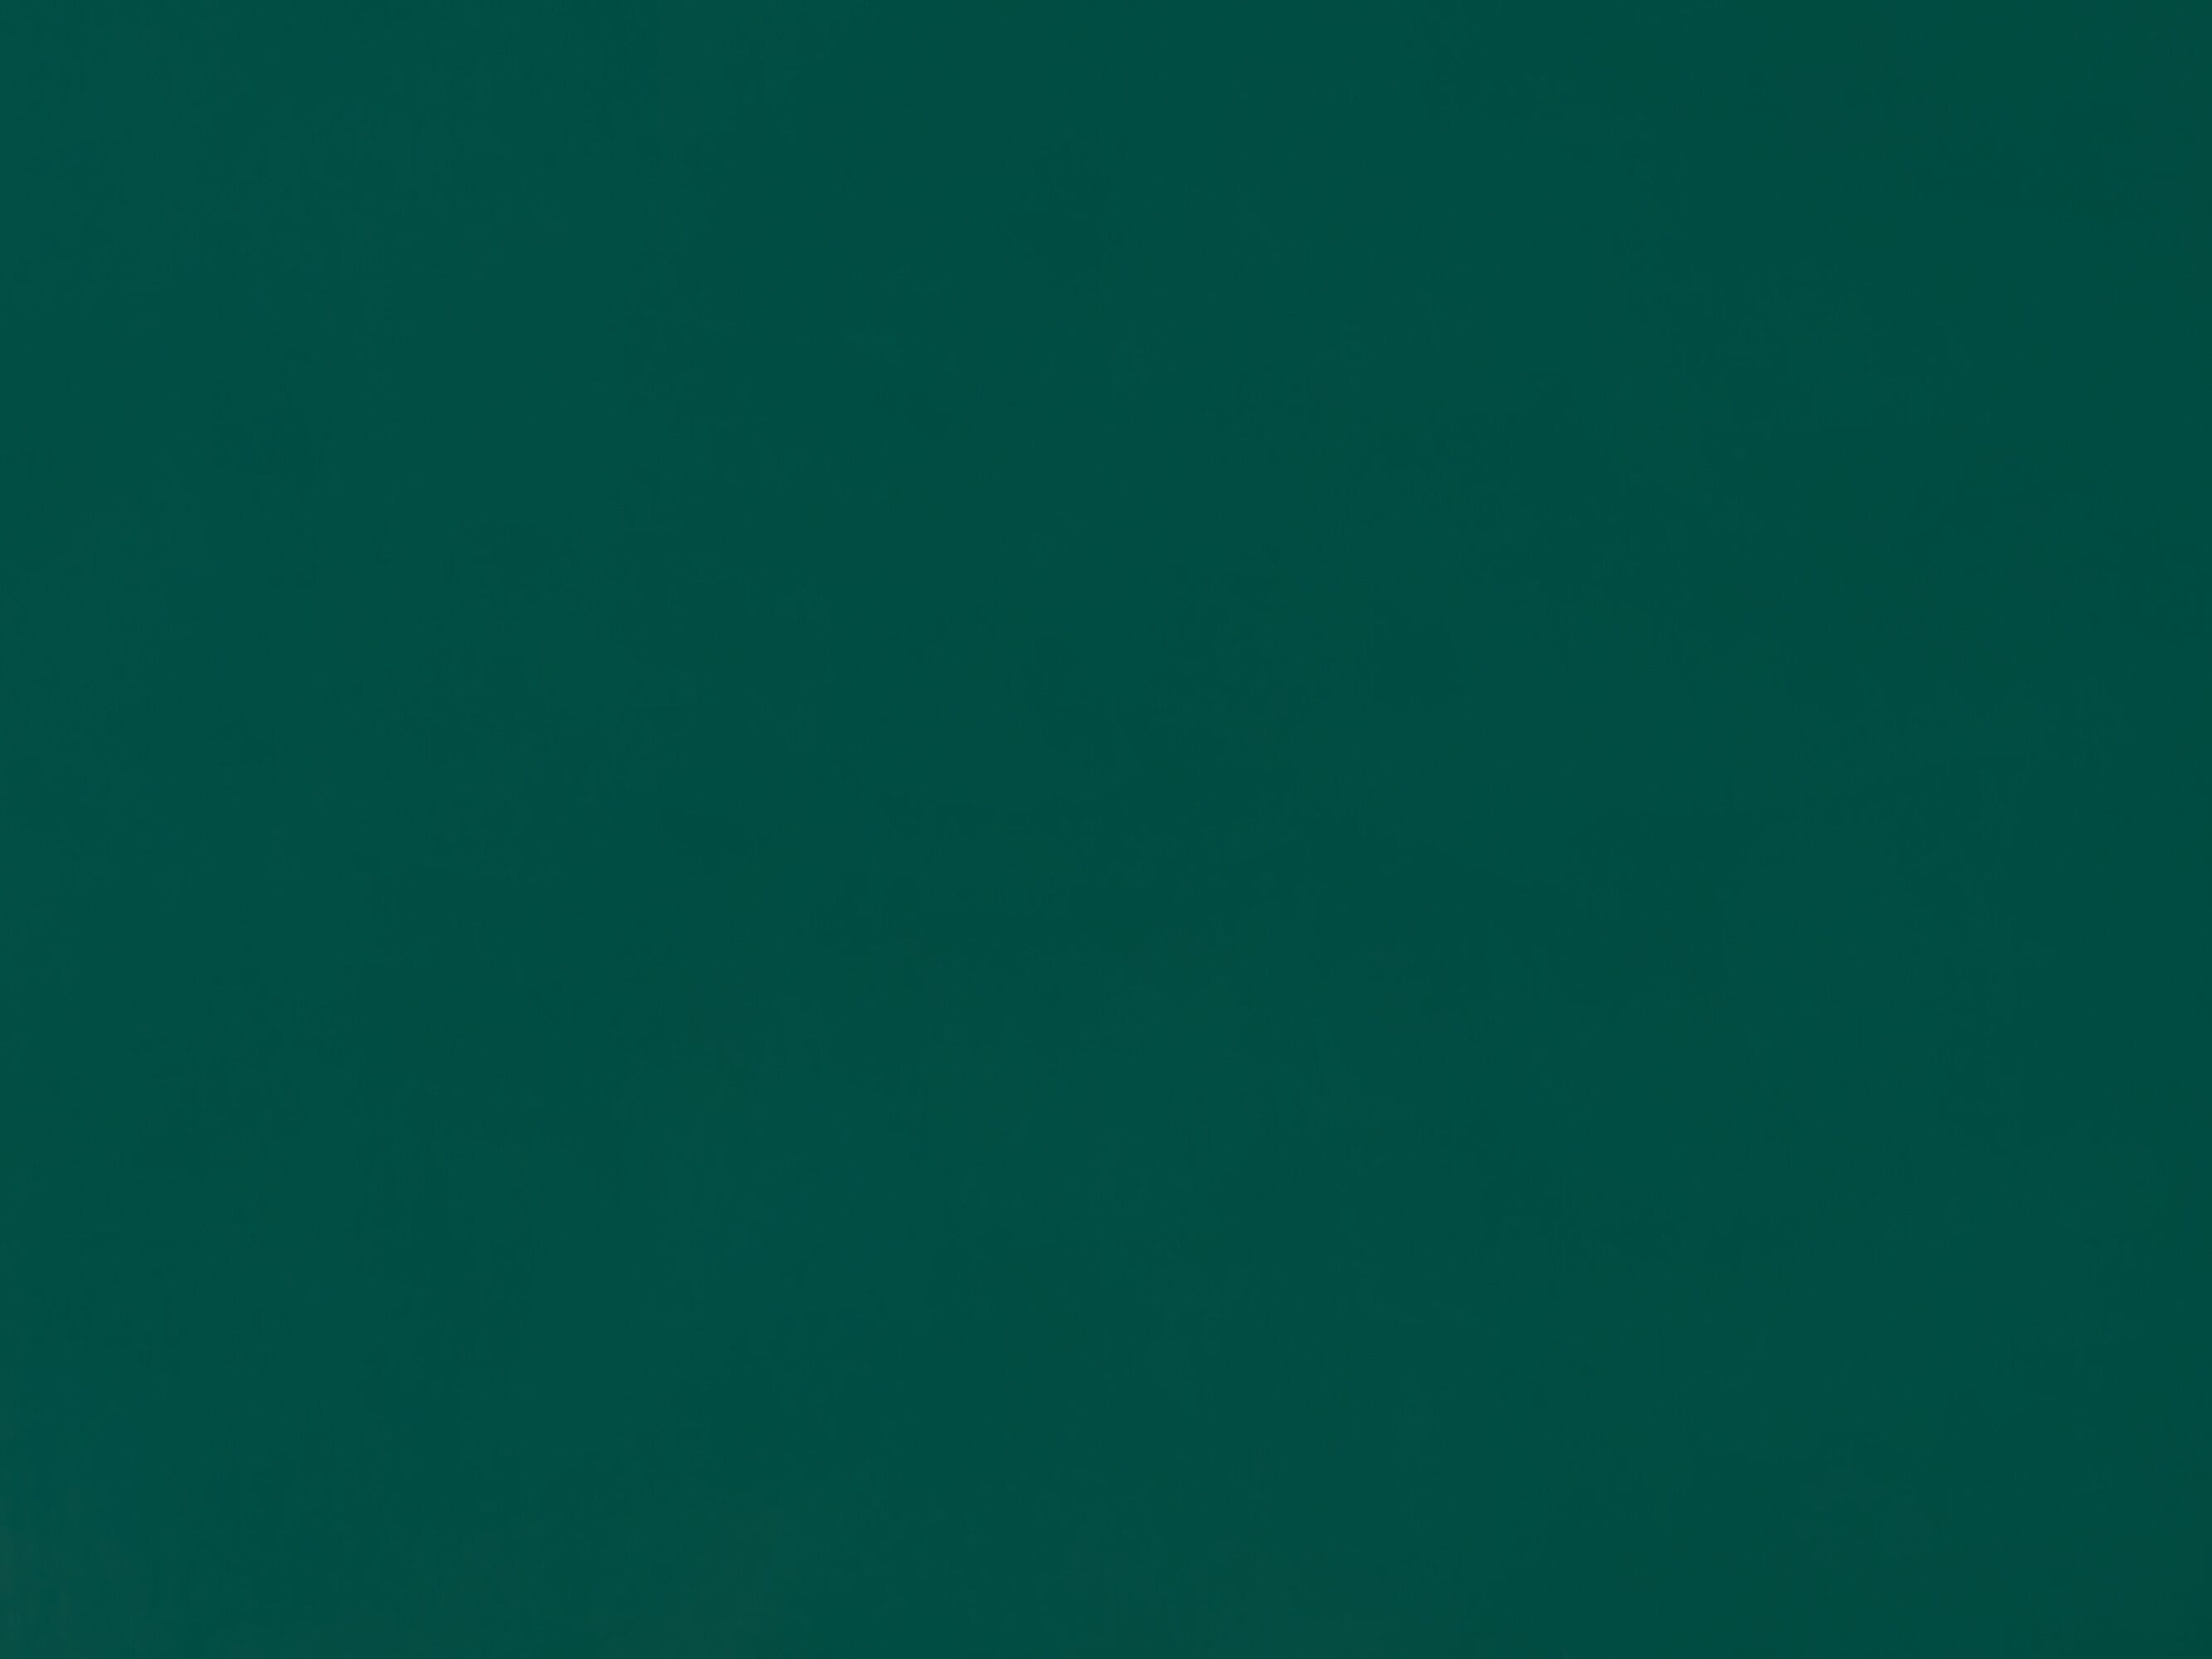 Úložný box 165x70cm Ceros (tmavě zelená)